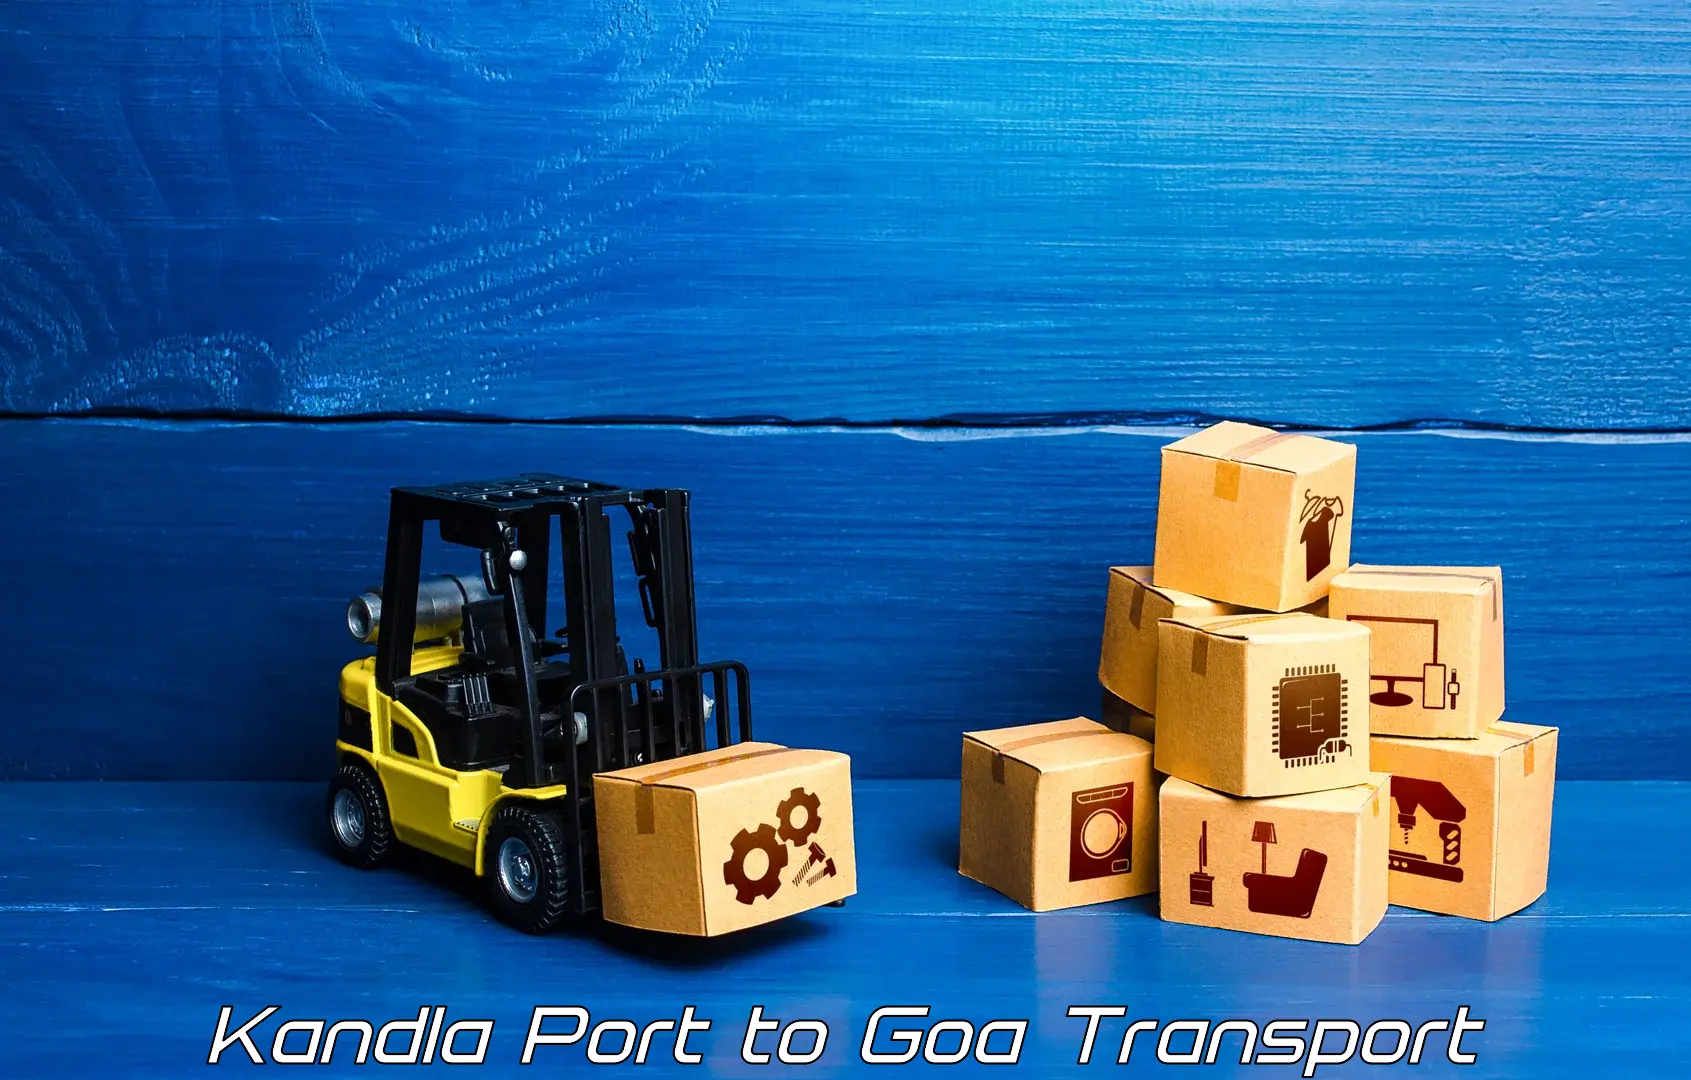 Daily parcel service transport in Kandla Port to Vasco da Gama